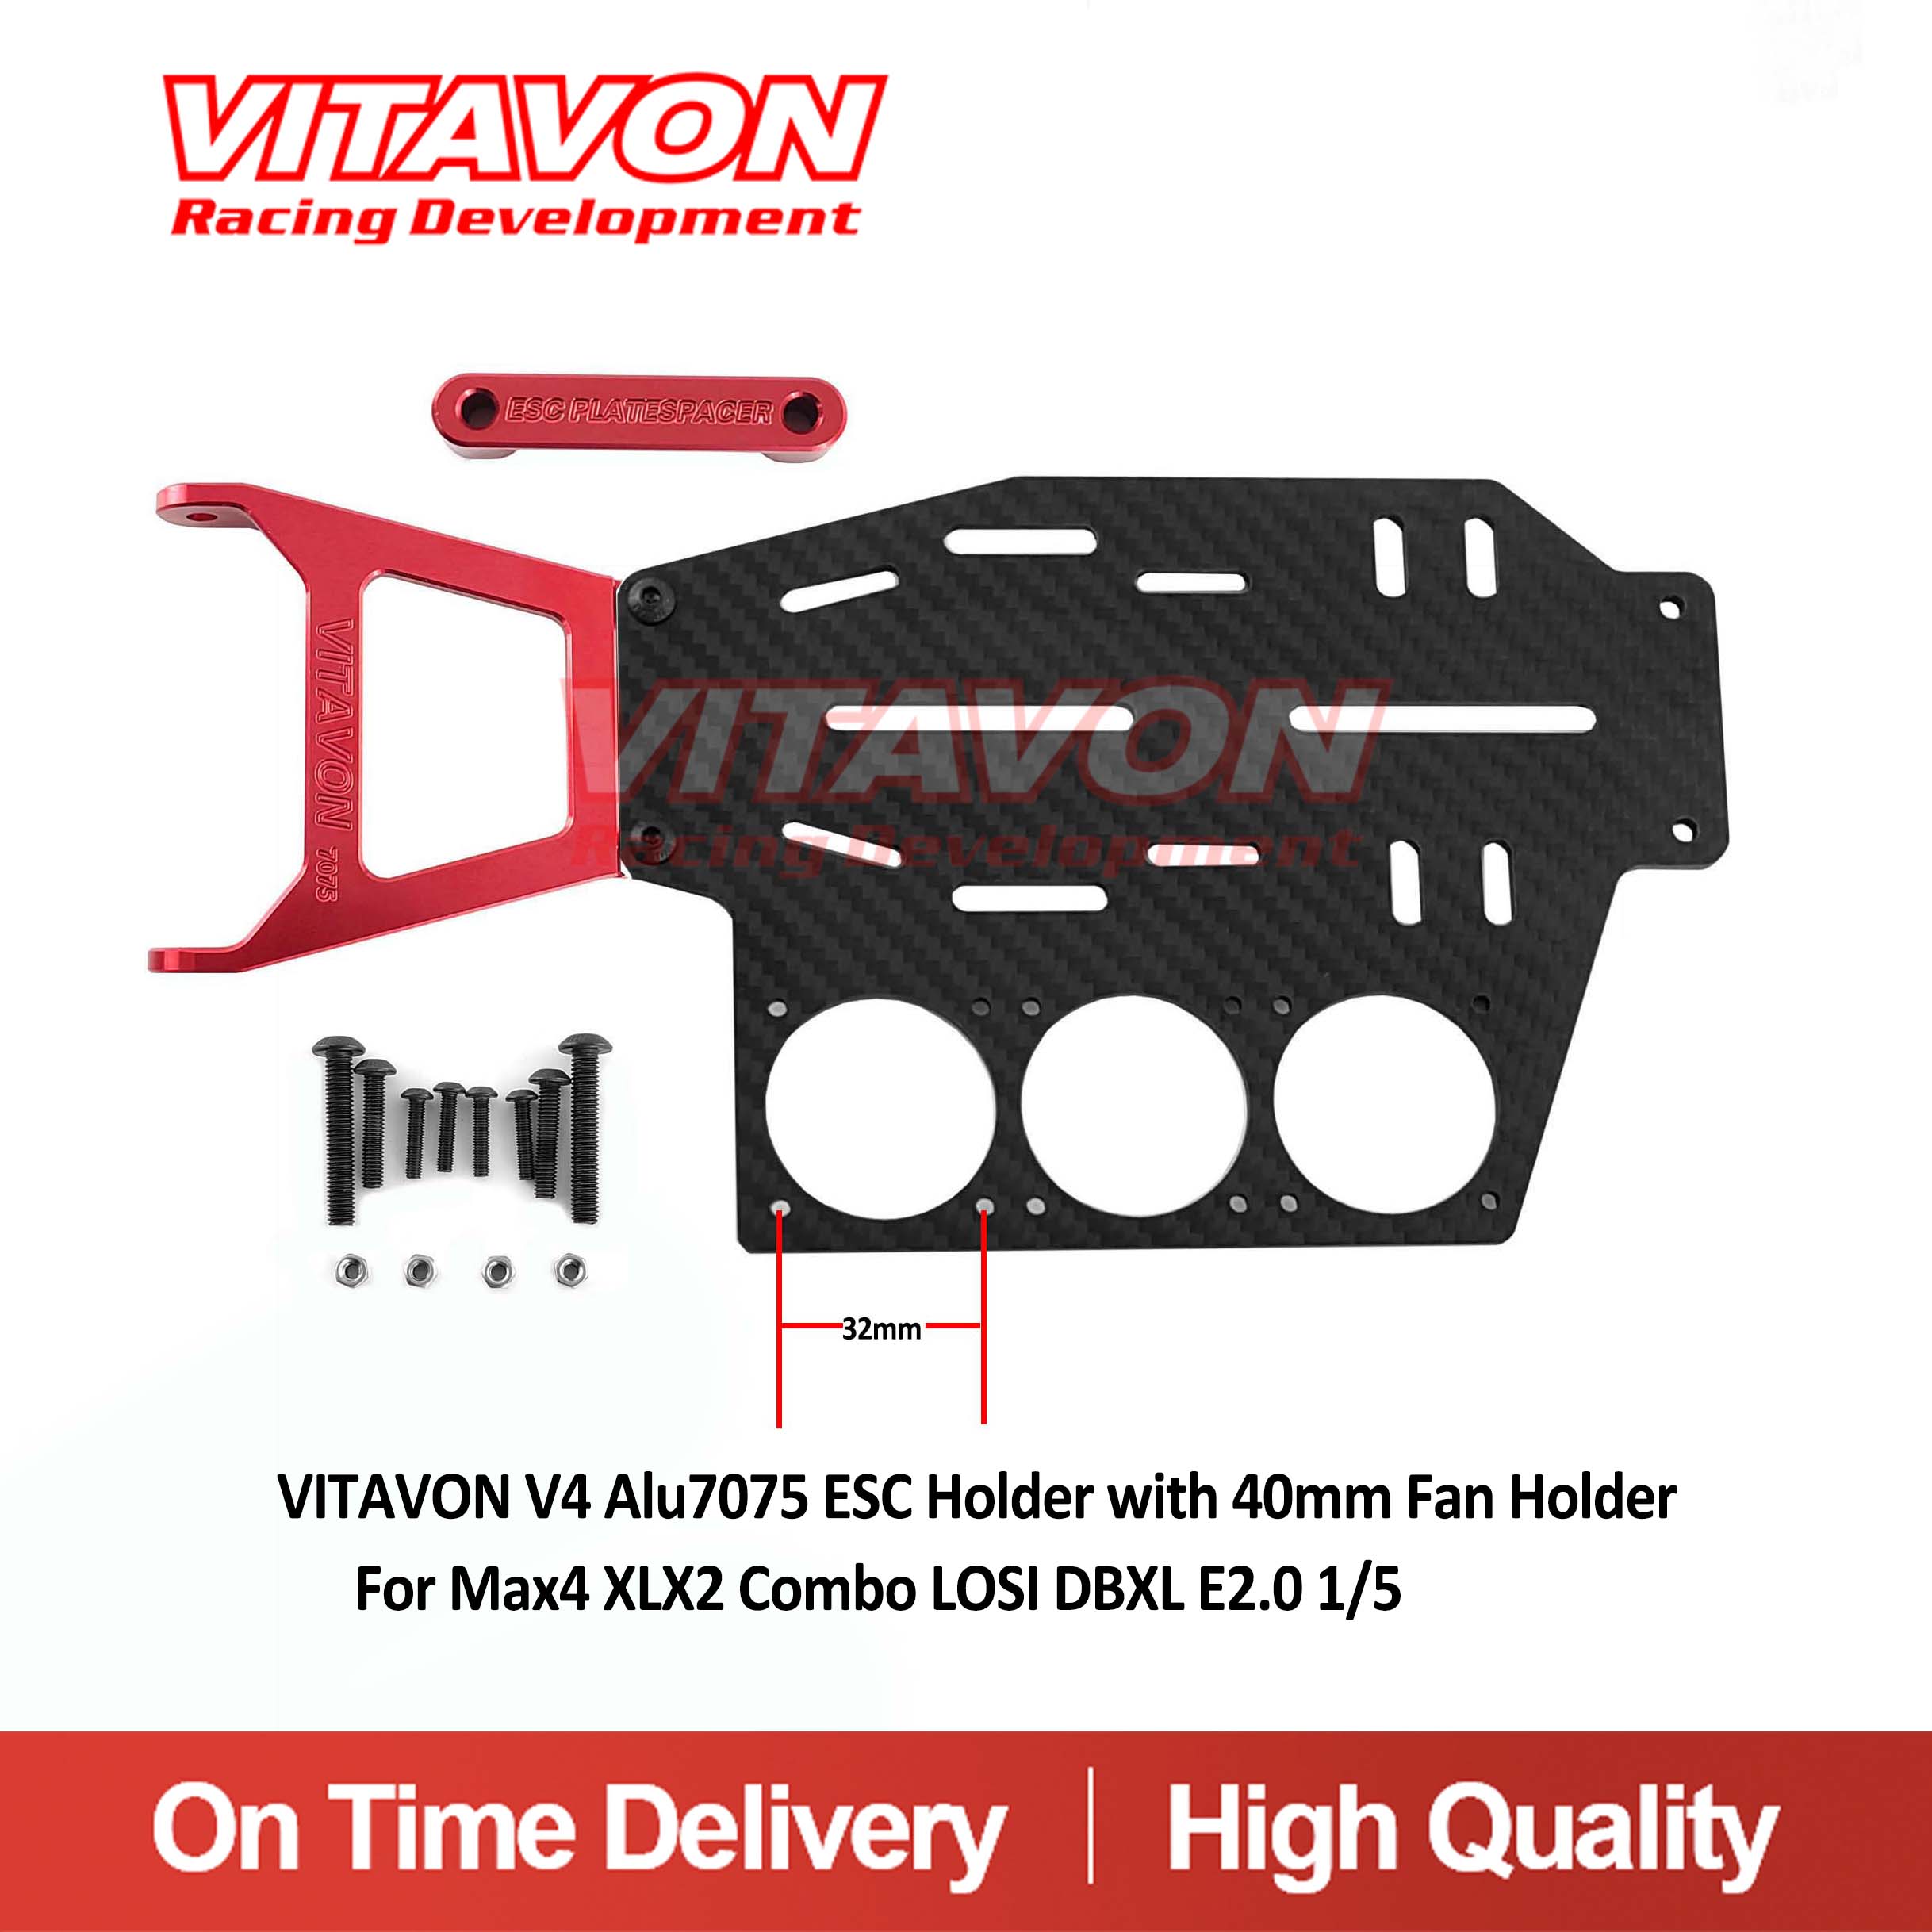 VITAVON V4 Alu7075 ESC Holder with 40mm Fan Holder For Max4 XLX2 Combo LOSI DBXL E2.0 1/5